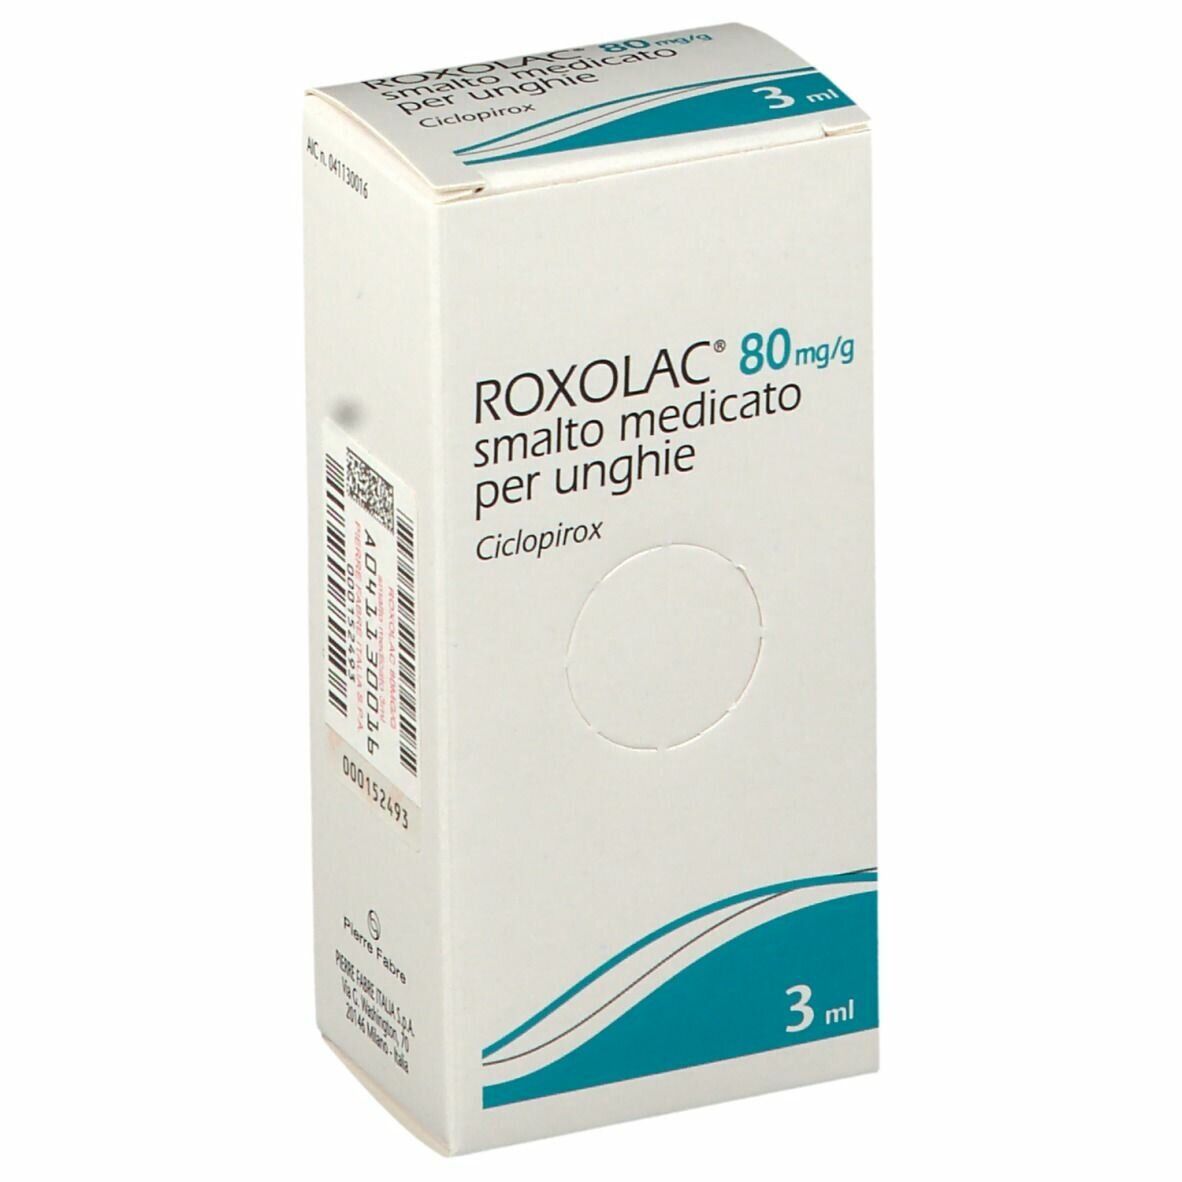 Pierre Fabre Roxolac 80mg/g Smalto Medicato per Unghie 3 ml